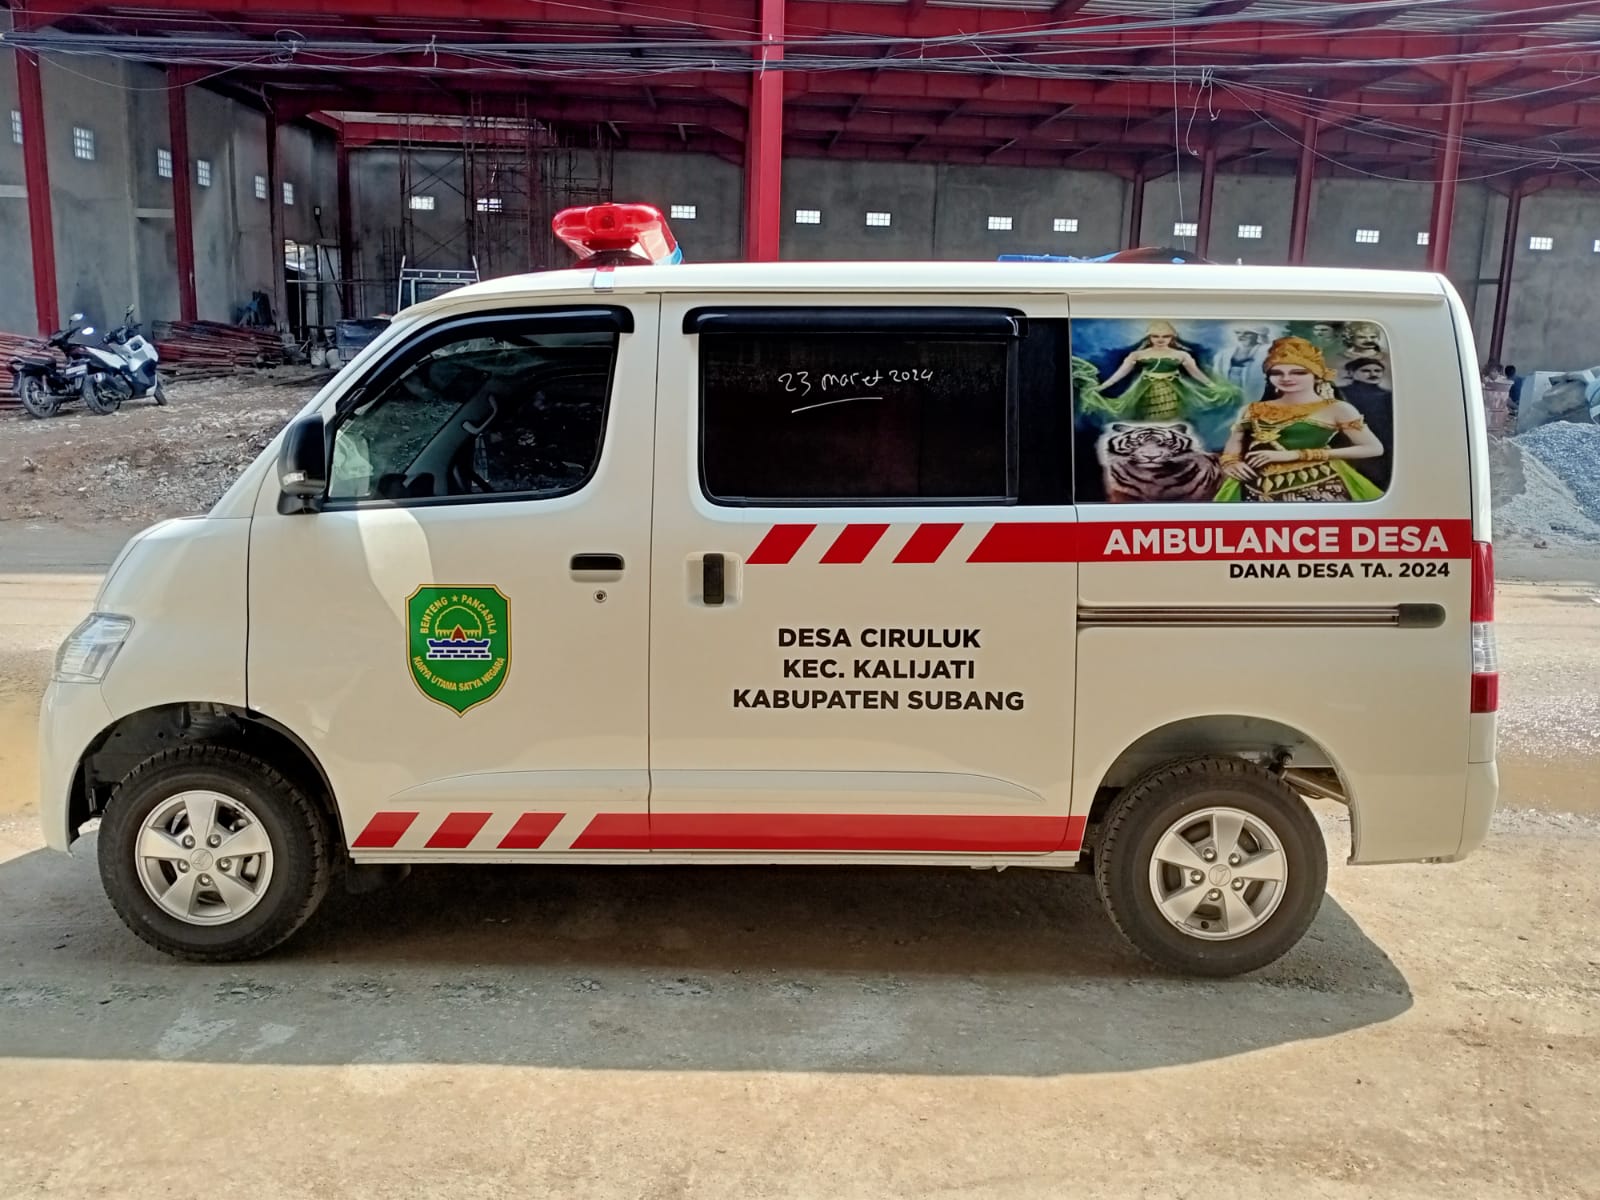 Harga Karoseri Ambulance Berkualitas Jawa Timur